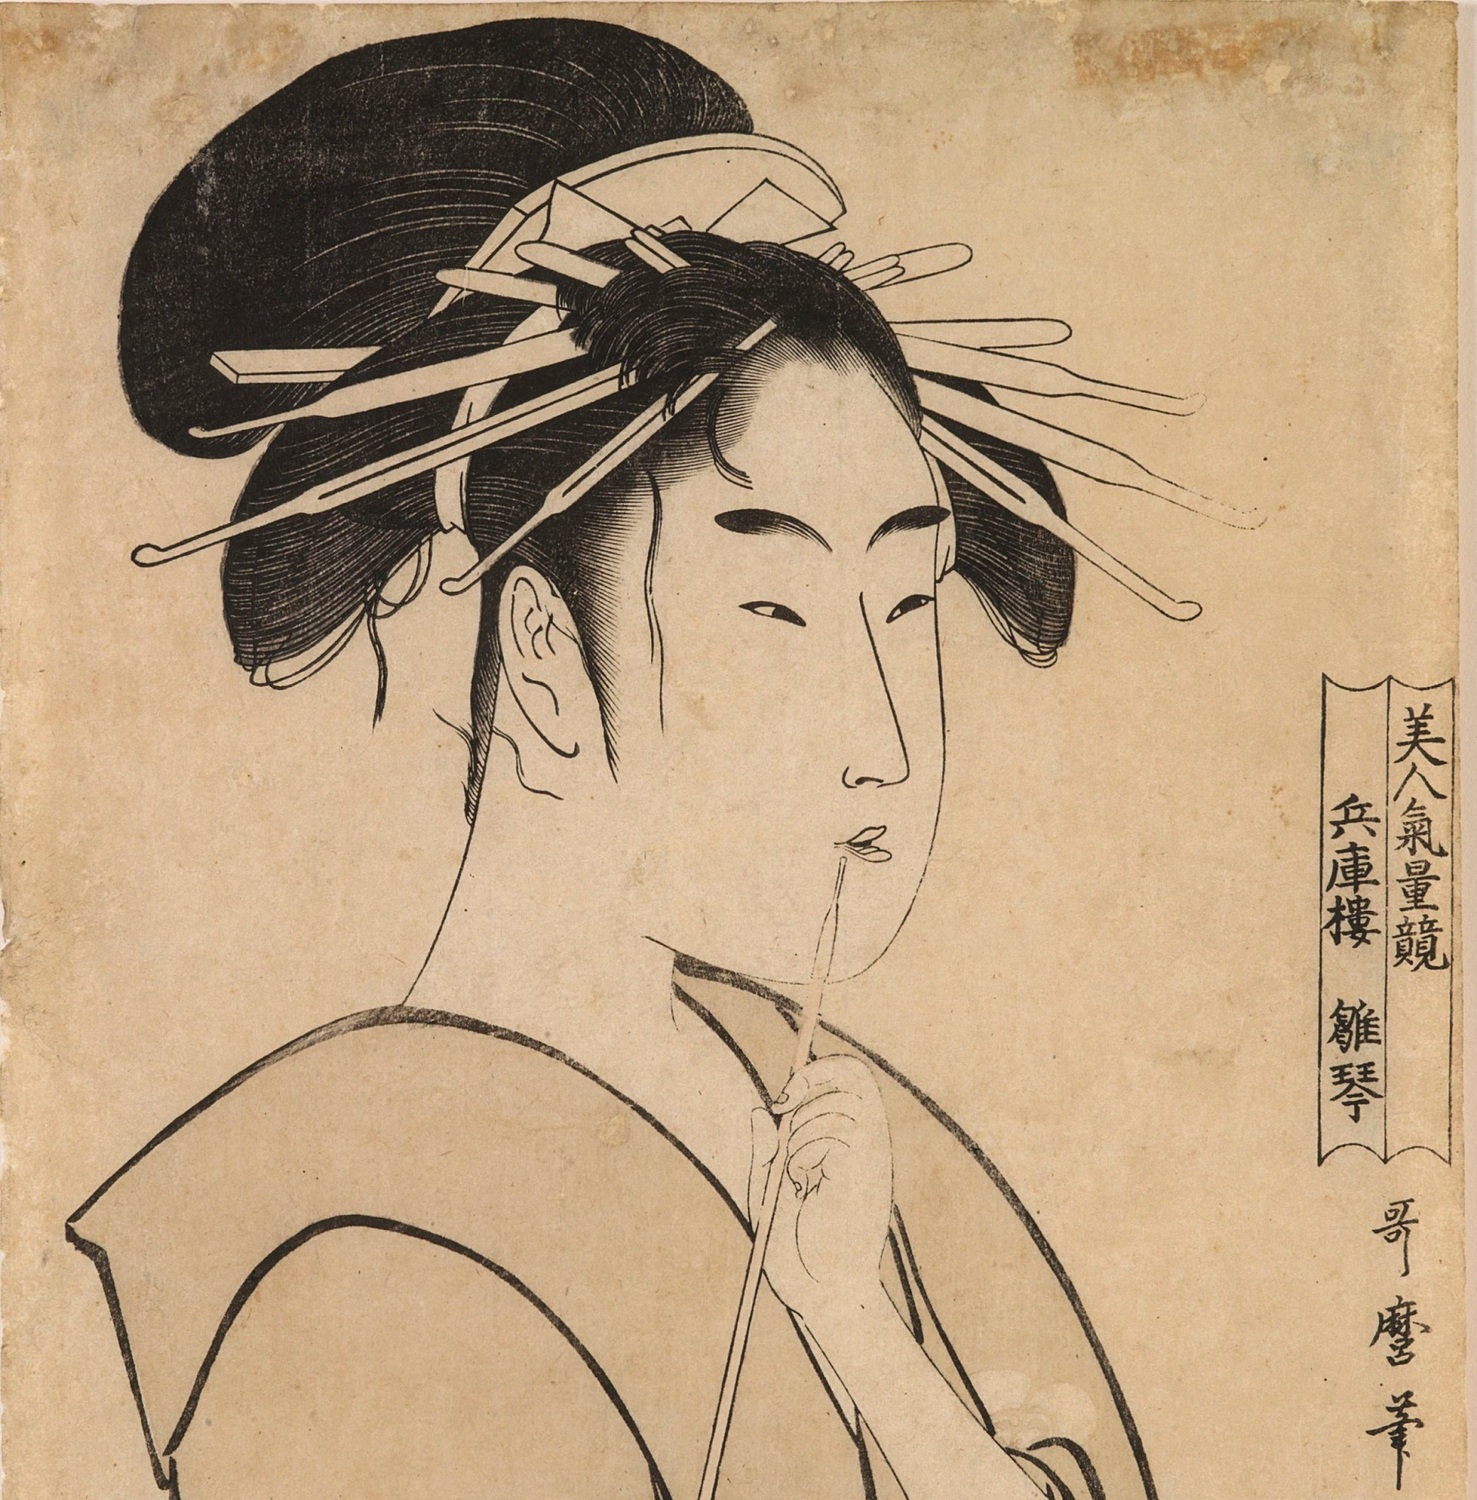 Kitagawa Utamaro, La cortesana Hinakoto de la casa Hyogo (detalle), c. 1795. Estampa ukiyo-e. Museo de Bellas Artes de Bilbao, n.º inv.82/776.